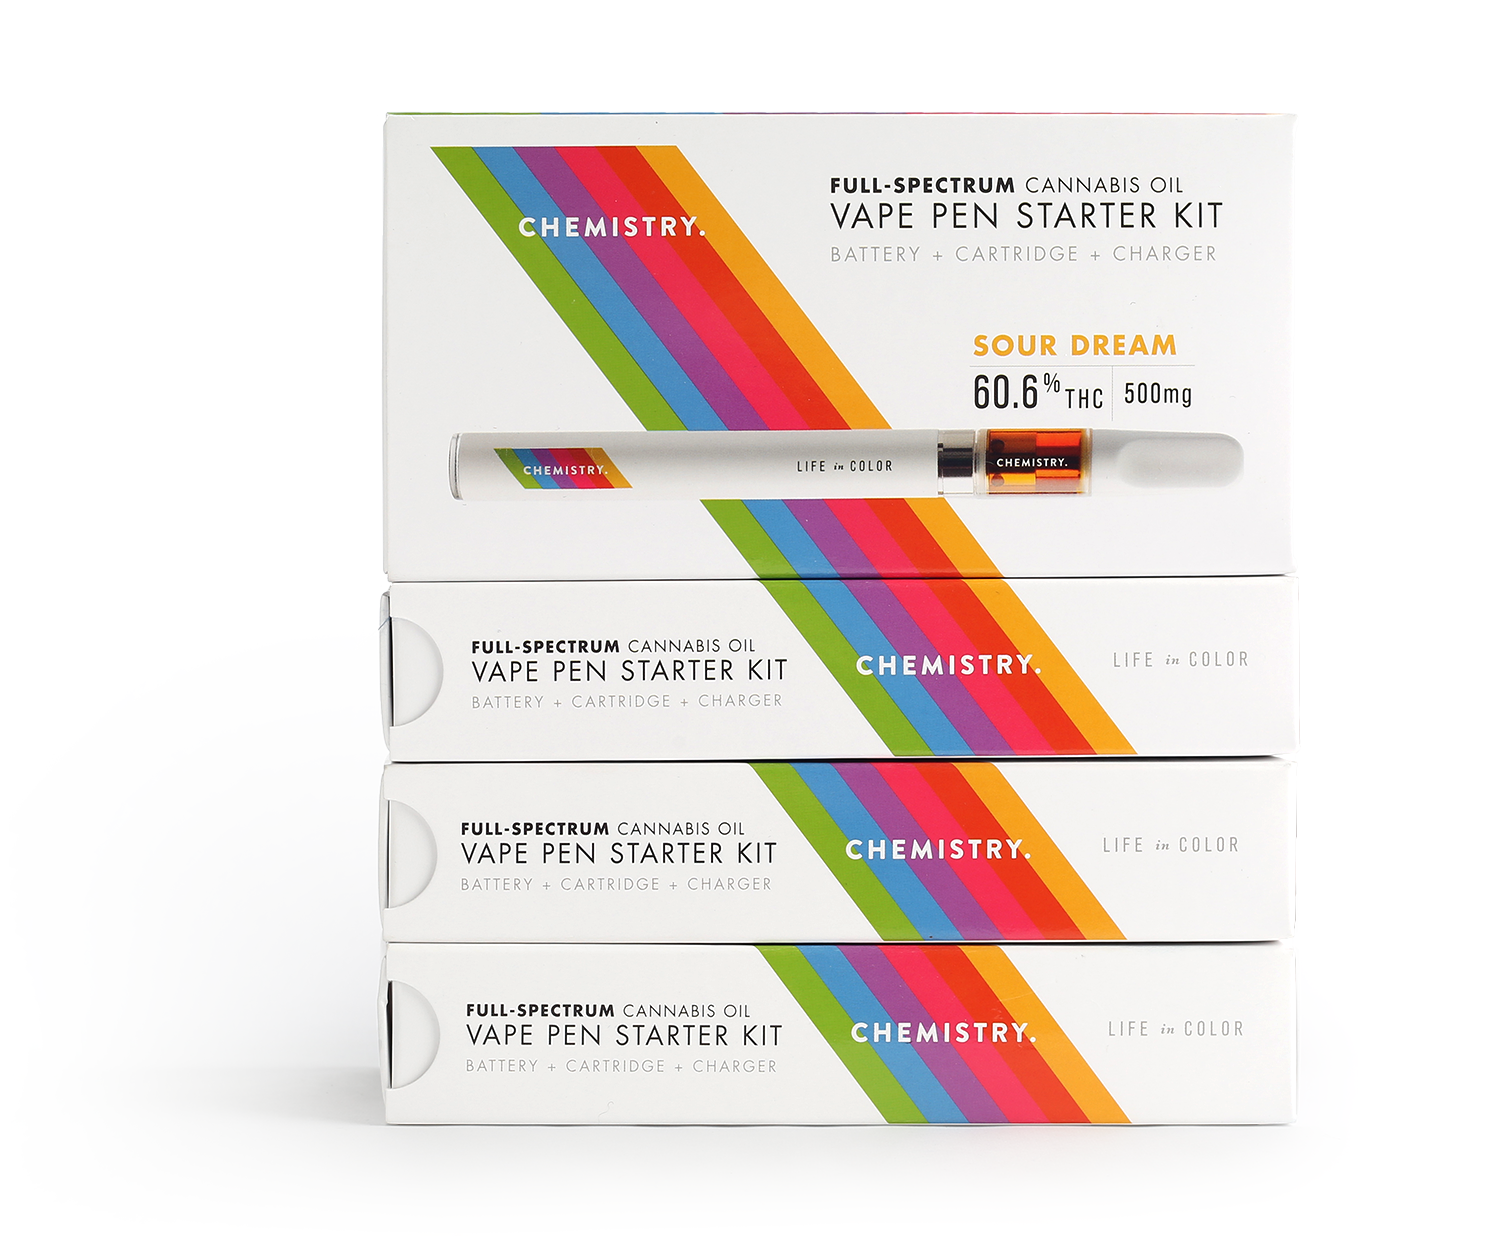 Chemistry Full-Spectrum Cannabis Vape Pen Starter Kit Packaging design